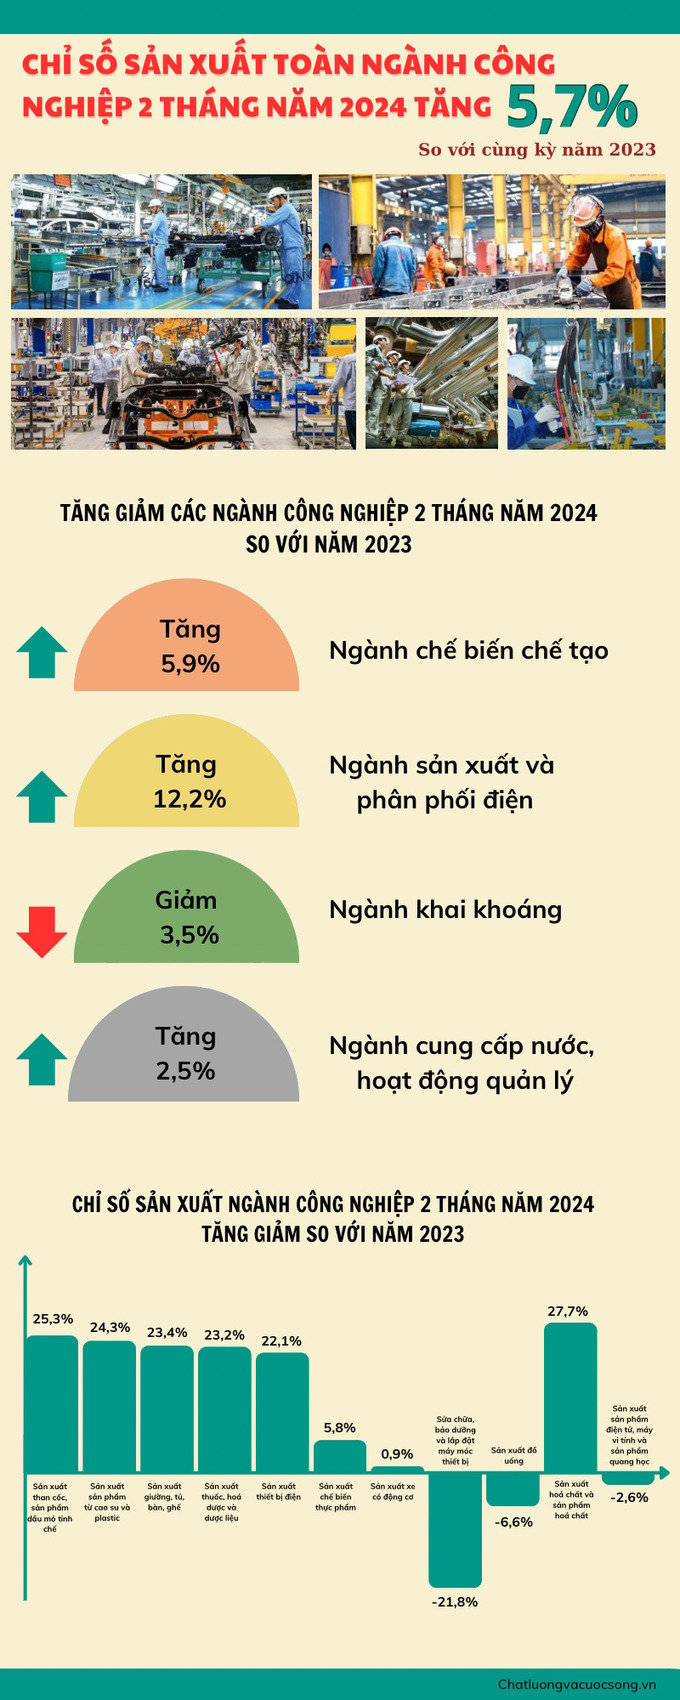 [Infographic] Chỉ số sản xuất Công nghiệp 2 tháng năm 2024 - Ảnh 1